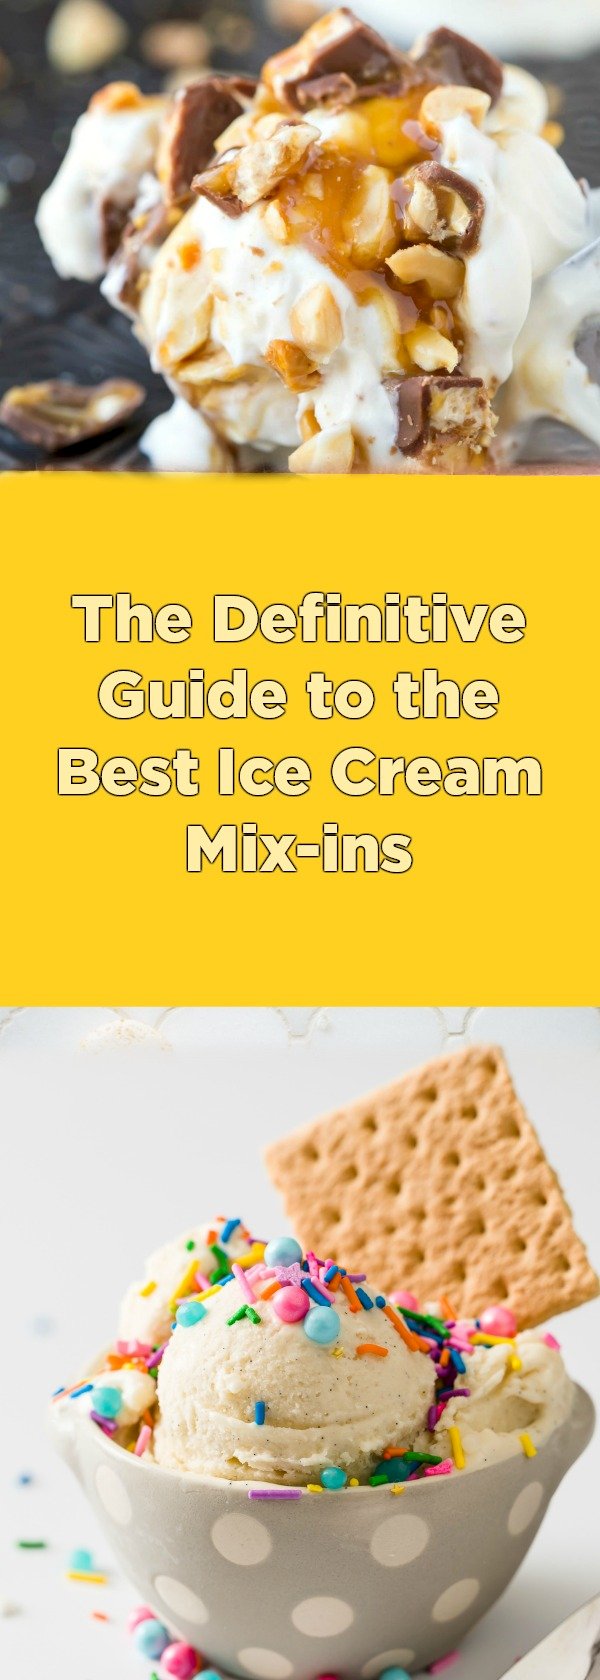 Ice Cream Mixins